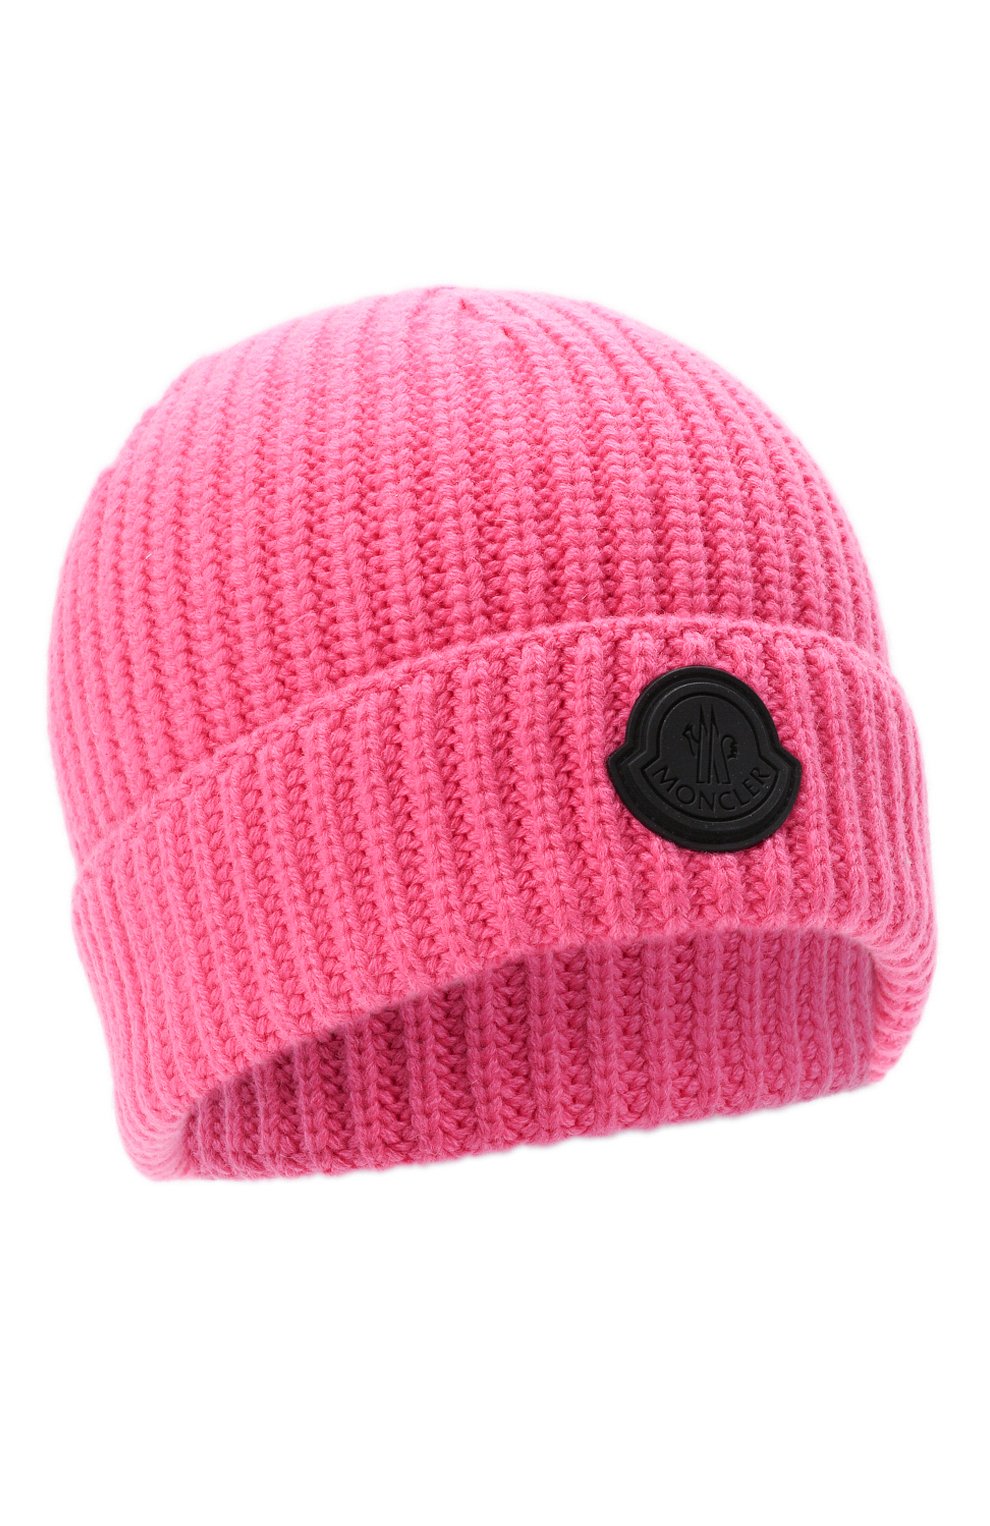 Женская шапка из шерсти и кашемира MONCLER розового цвета, арт. G2-093-3B000-01-M1130 | Фото 1 (Материал: Текстиль, Кашемир, Шерсть)